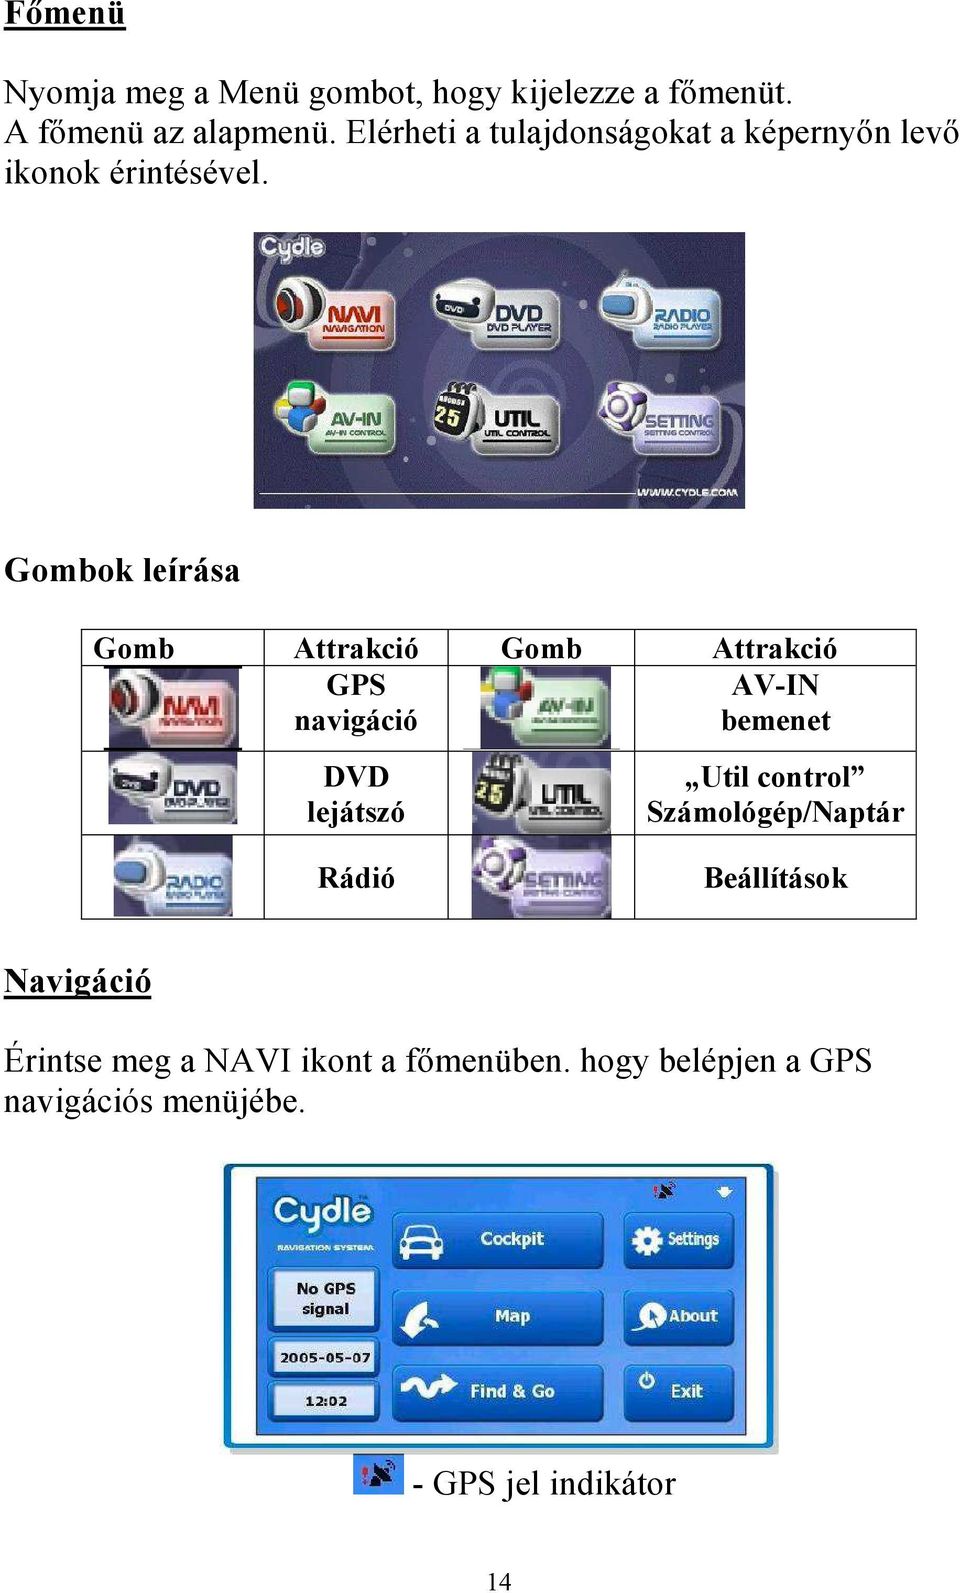 Gombok leírása Gomb Attrakció Gomb Attrakció GPS AV-IN navigáció bemenet DVD lejátszó Util